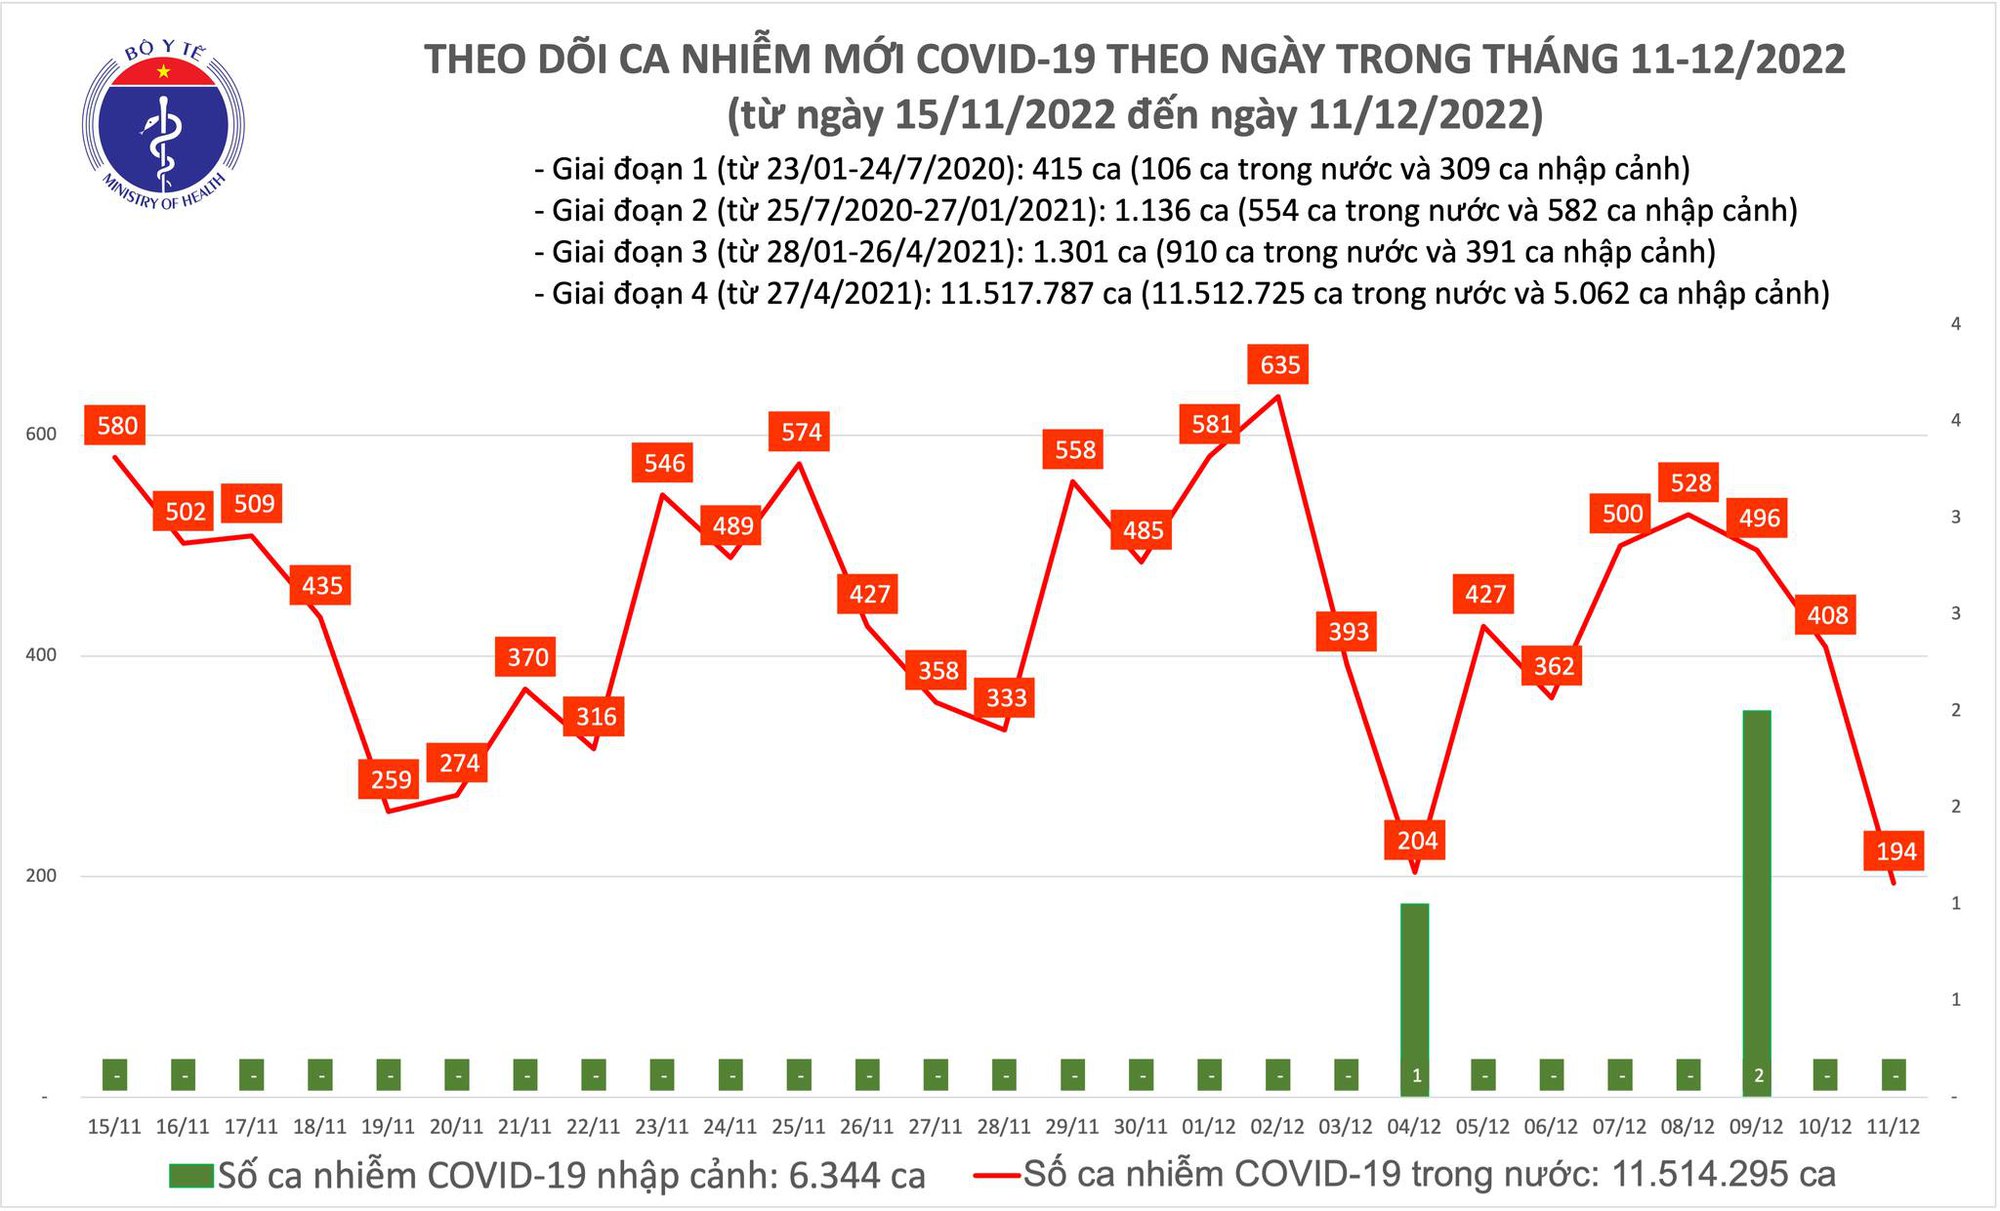 Covid-19 ngày 11/12: Chỉ còn dưới 200 ca - Ảnh 1.